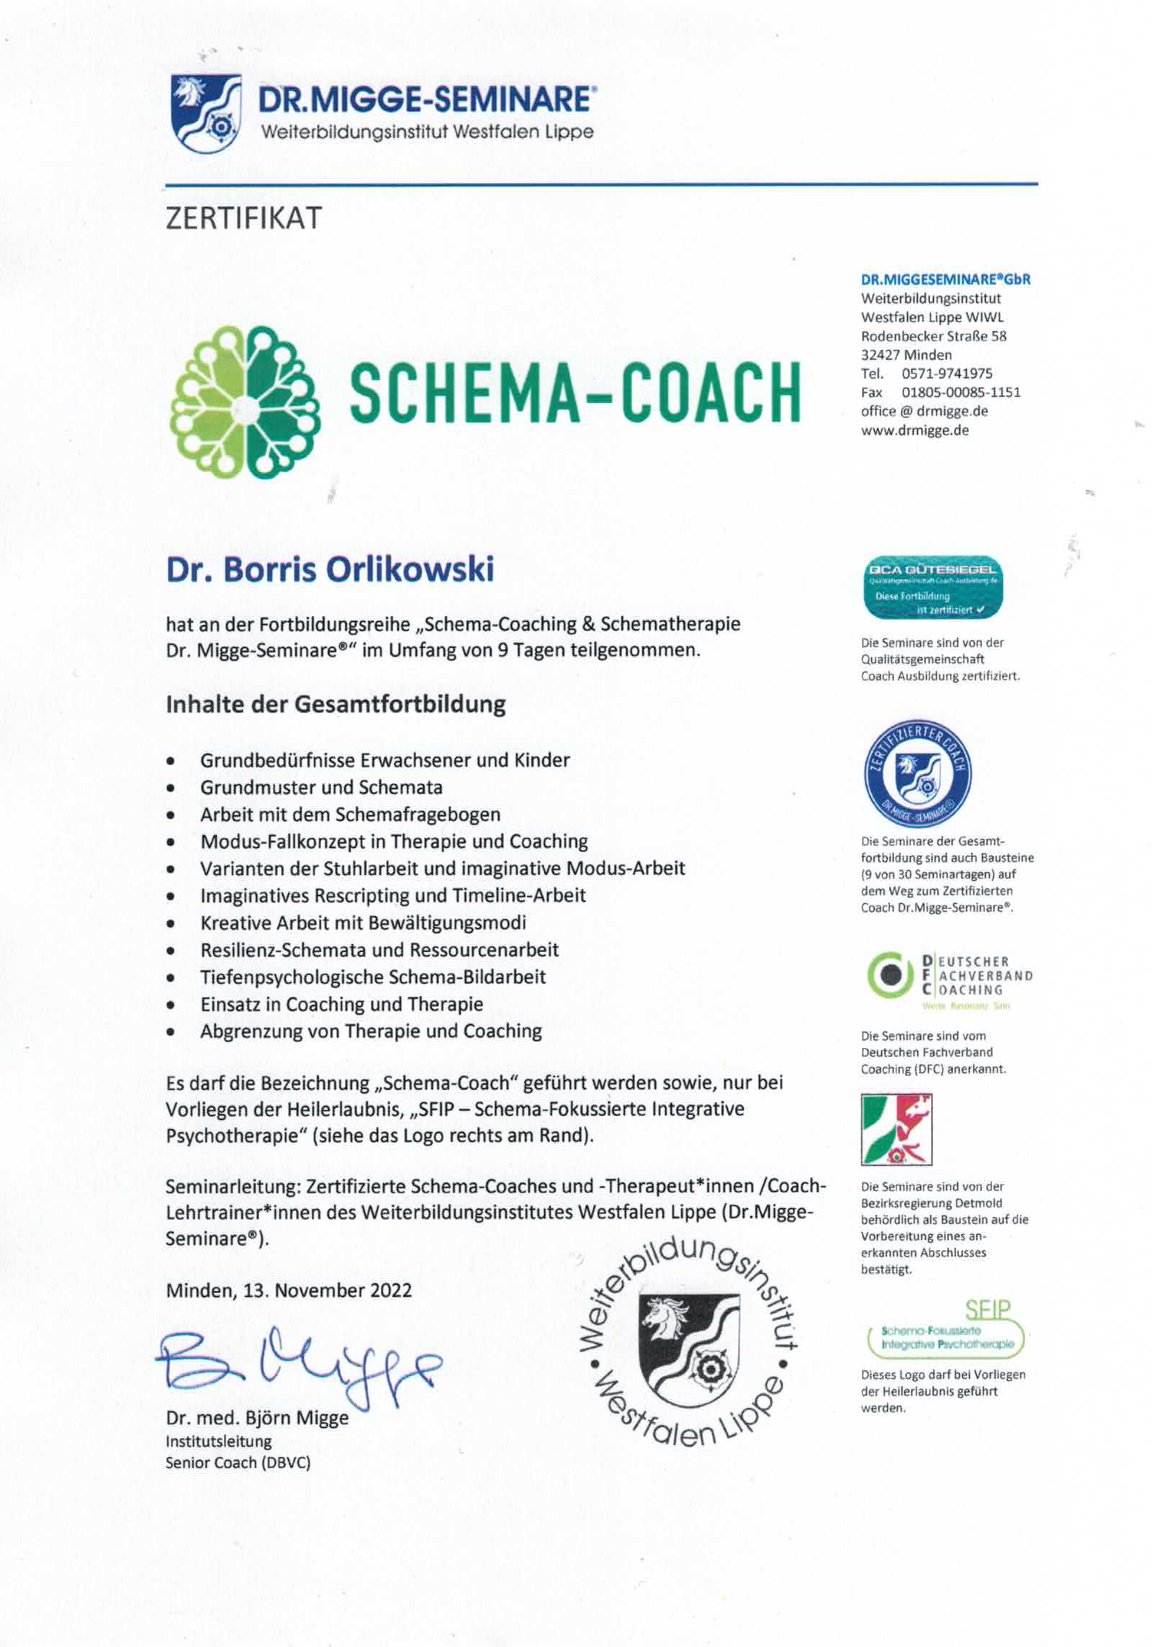 Schema-Coach